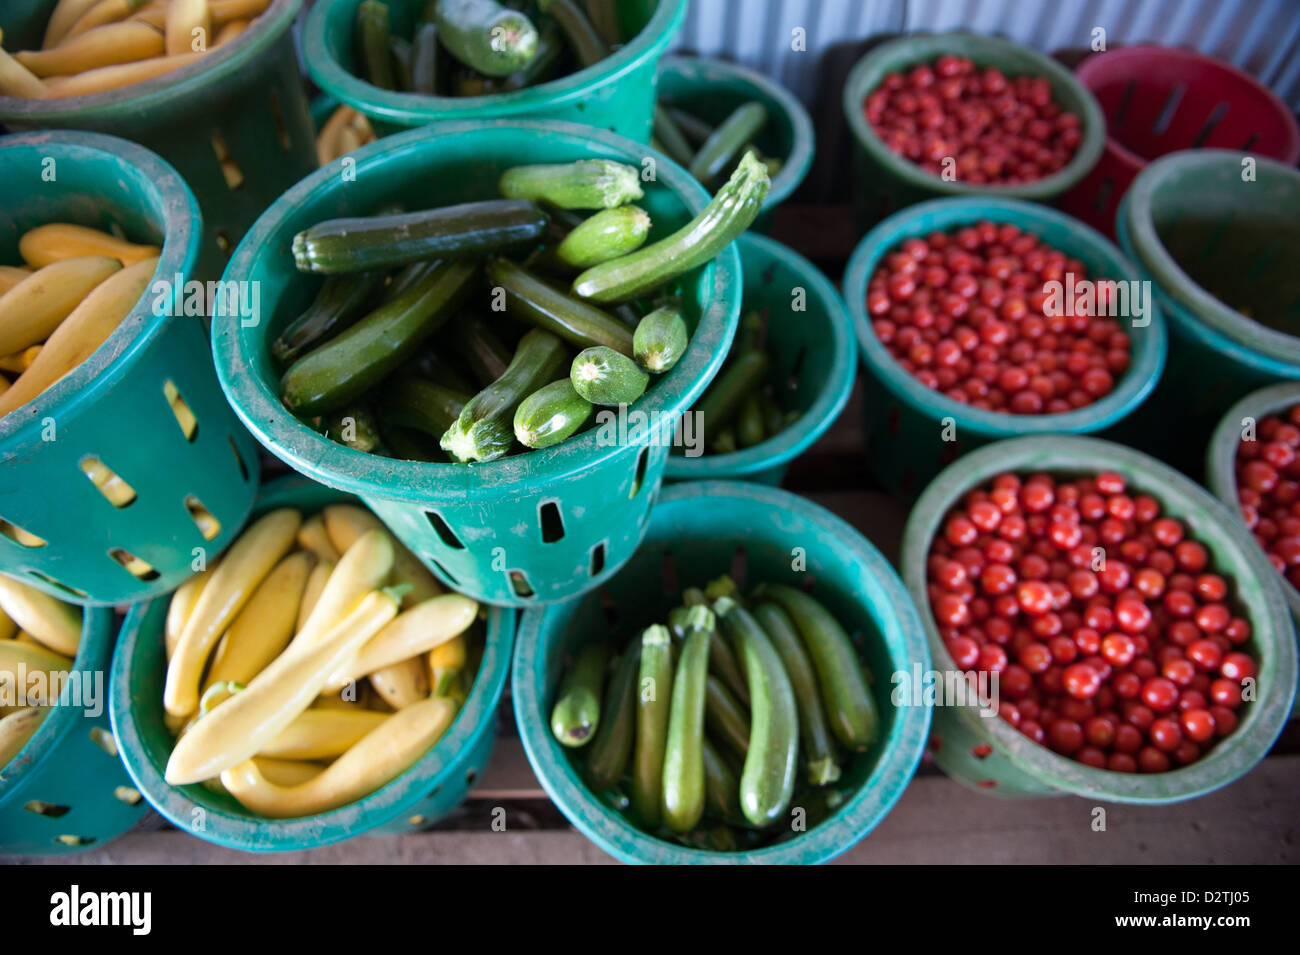 Variety of produce Stock Photo